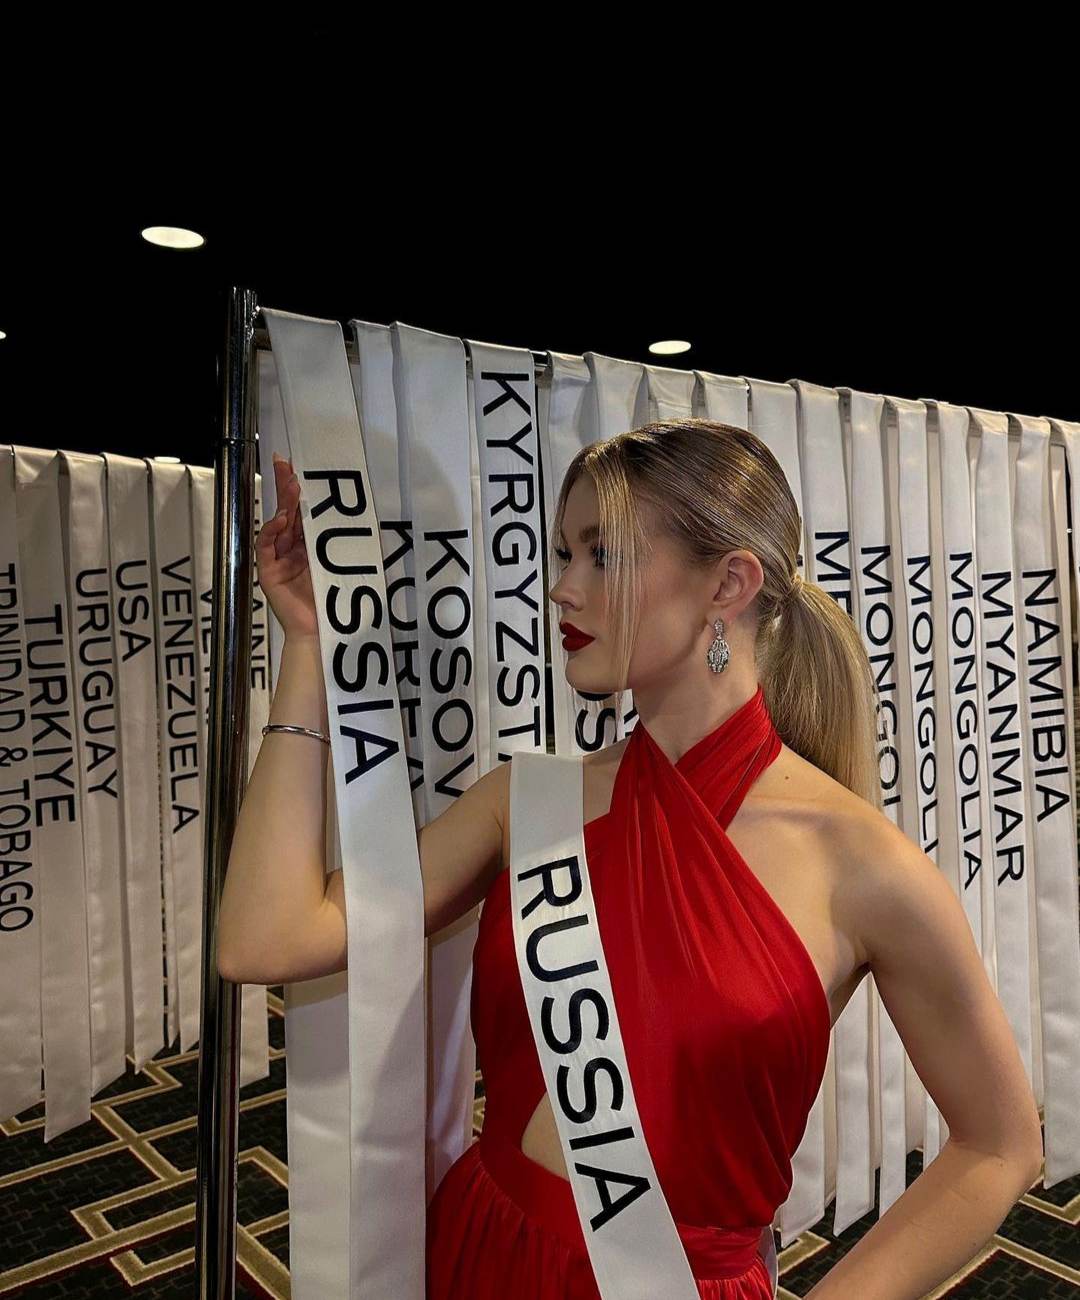 Hoa hậu Nga 2022 gây náo loạn vì vẻ đẹp như tranh, thích tập môn "nóng hừng hực" - 3